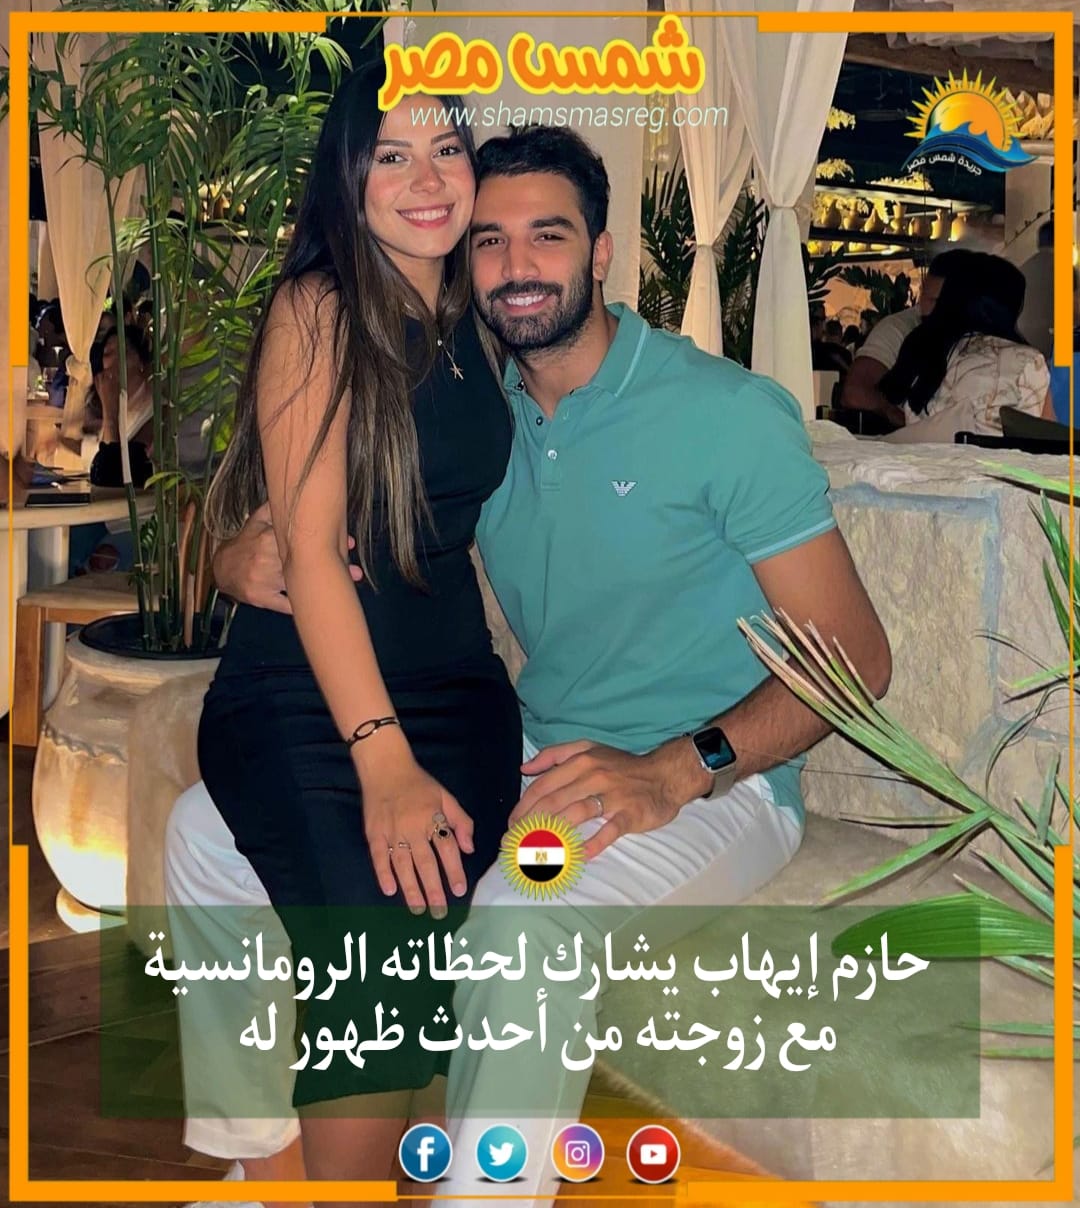 |شمس مصر|.. حازم إيهاب يشارك لحظاته الرومانسية مع زوجته من أحدث ظهور له